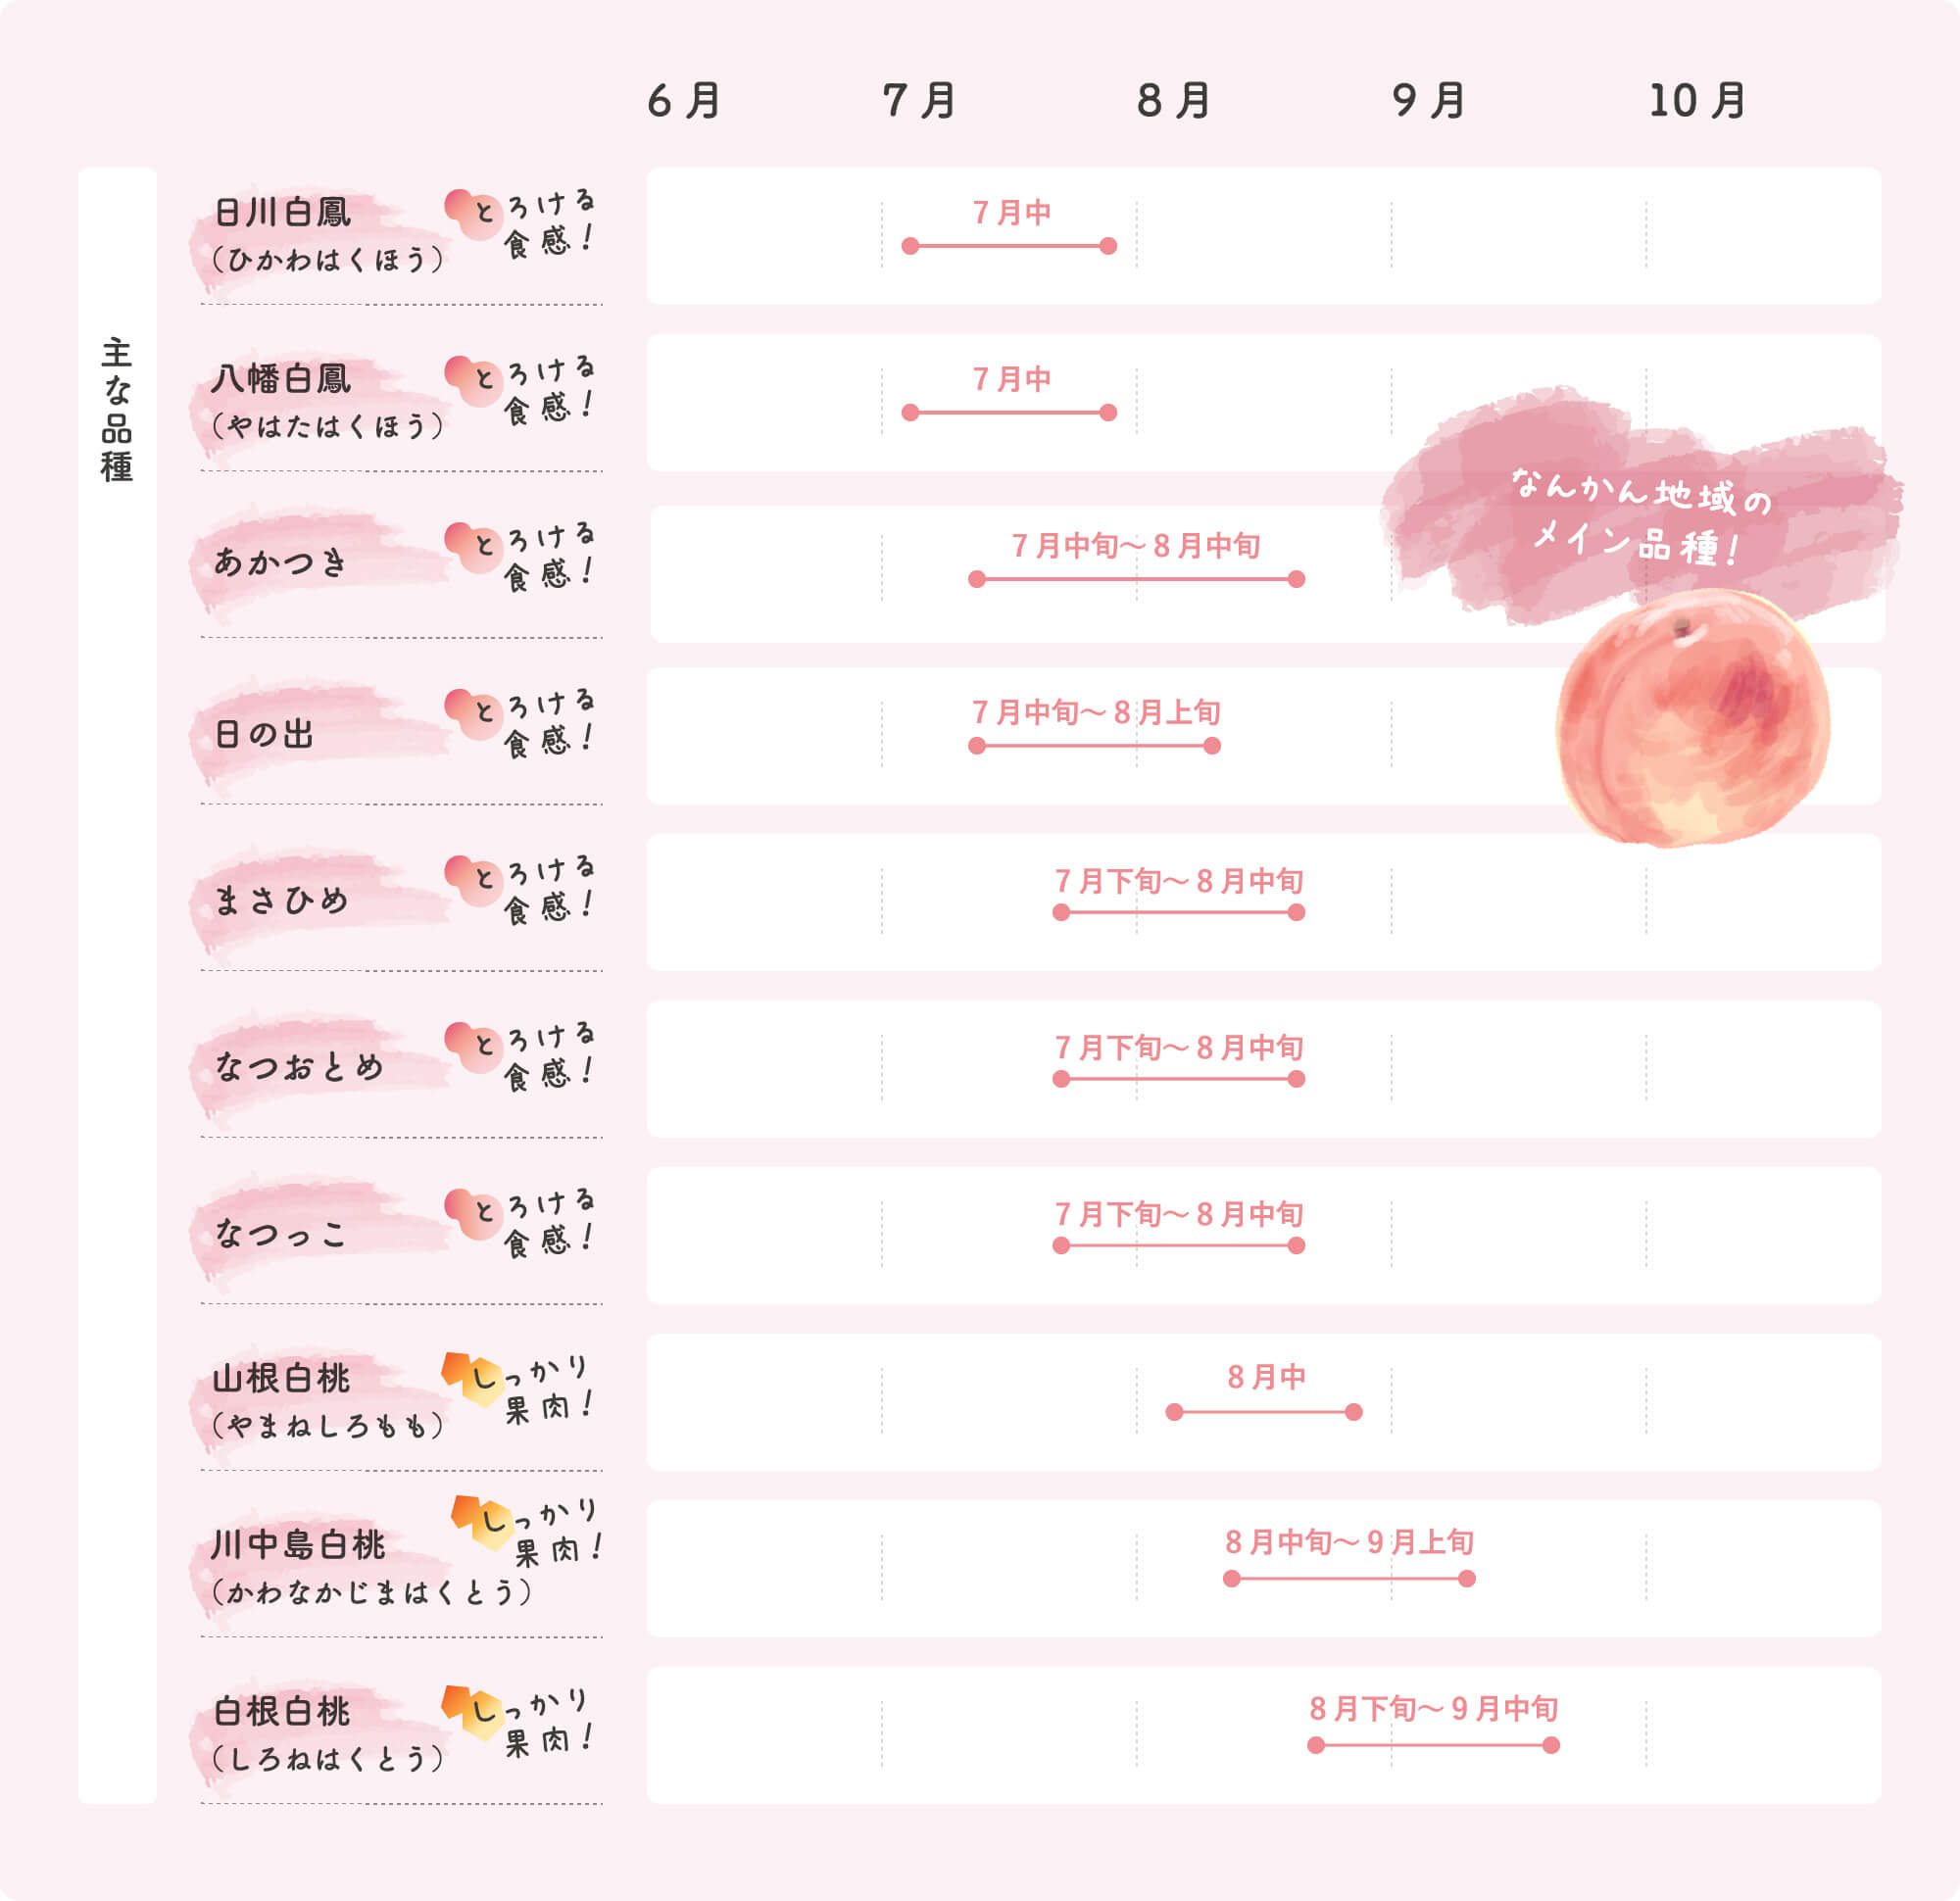 桃品種シーズンカレンダー なんかん地域のメイン品種